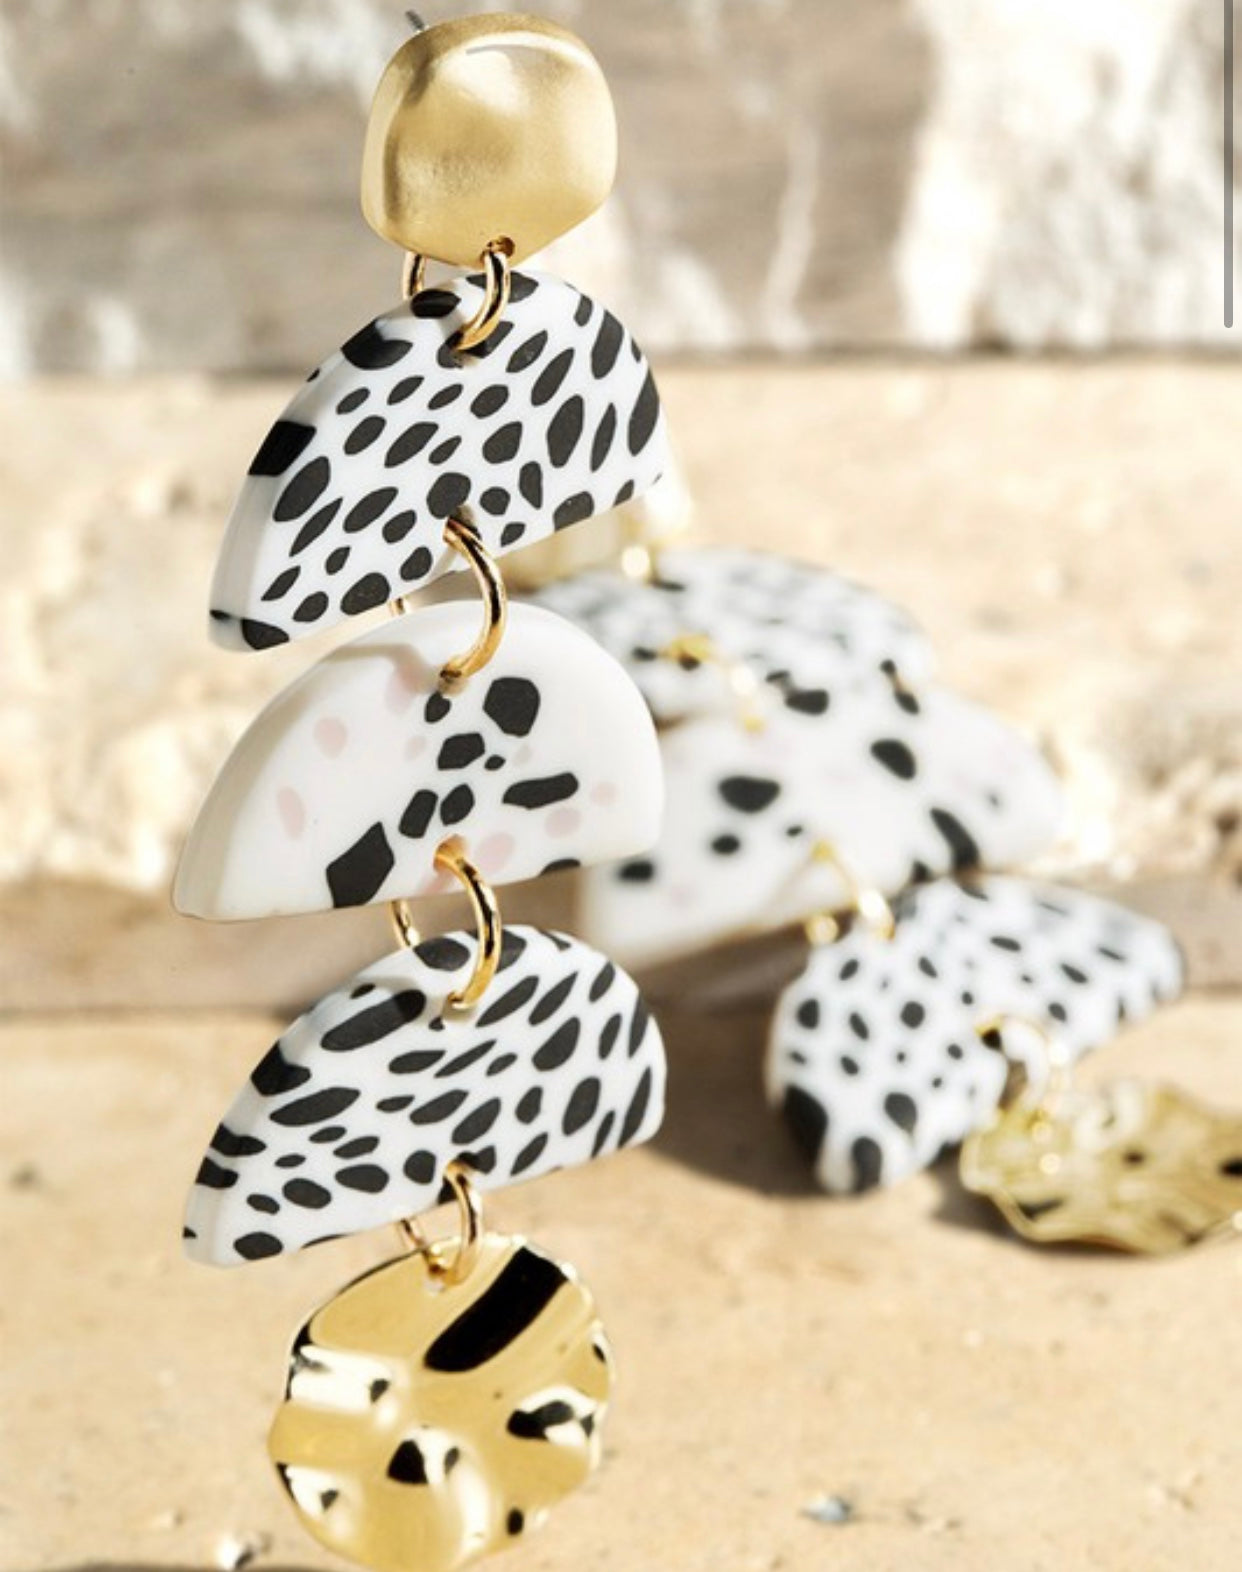 Clay Dalmatian Earrings